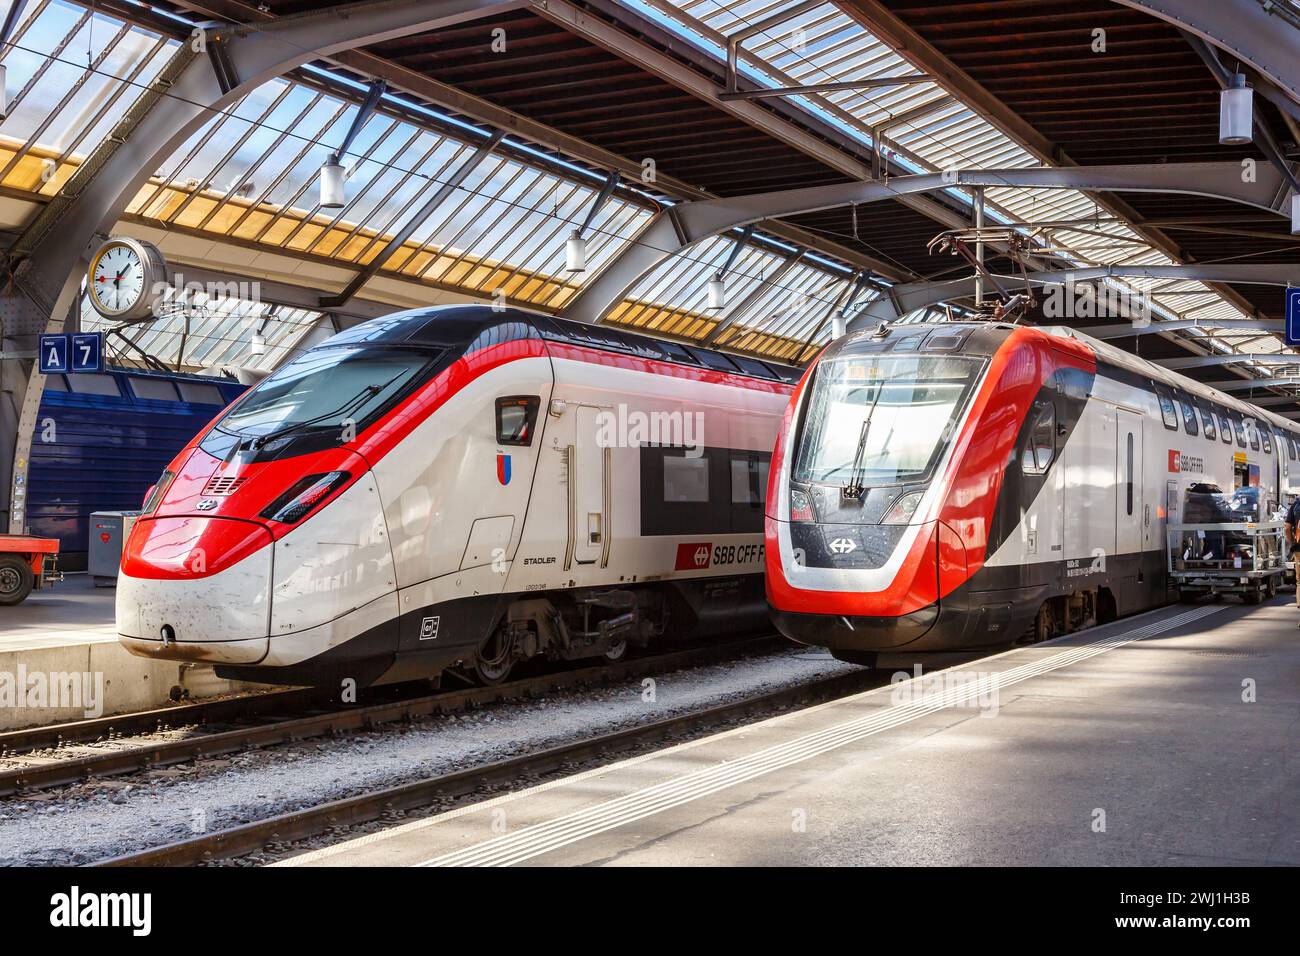 FFS treni passeggeri delle Ferrovie federali Svizzere alla stazione centrale di Zurigo, Svizzera Foto Stock